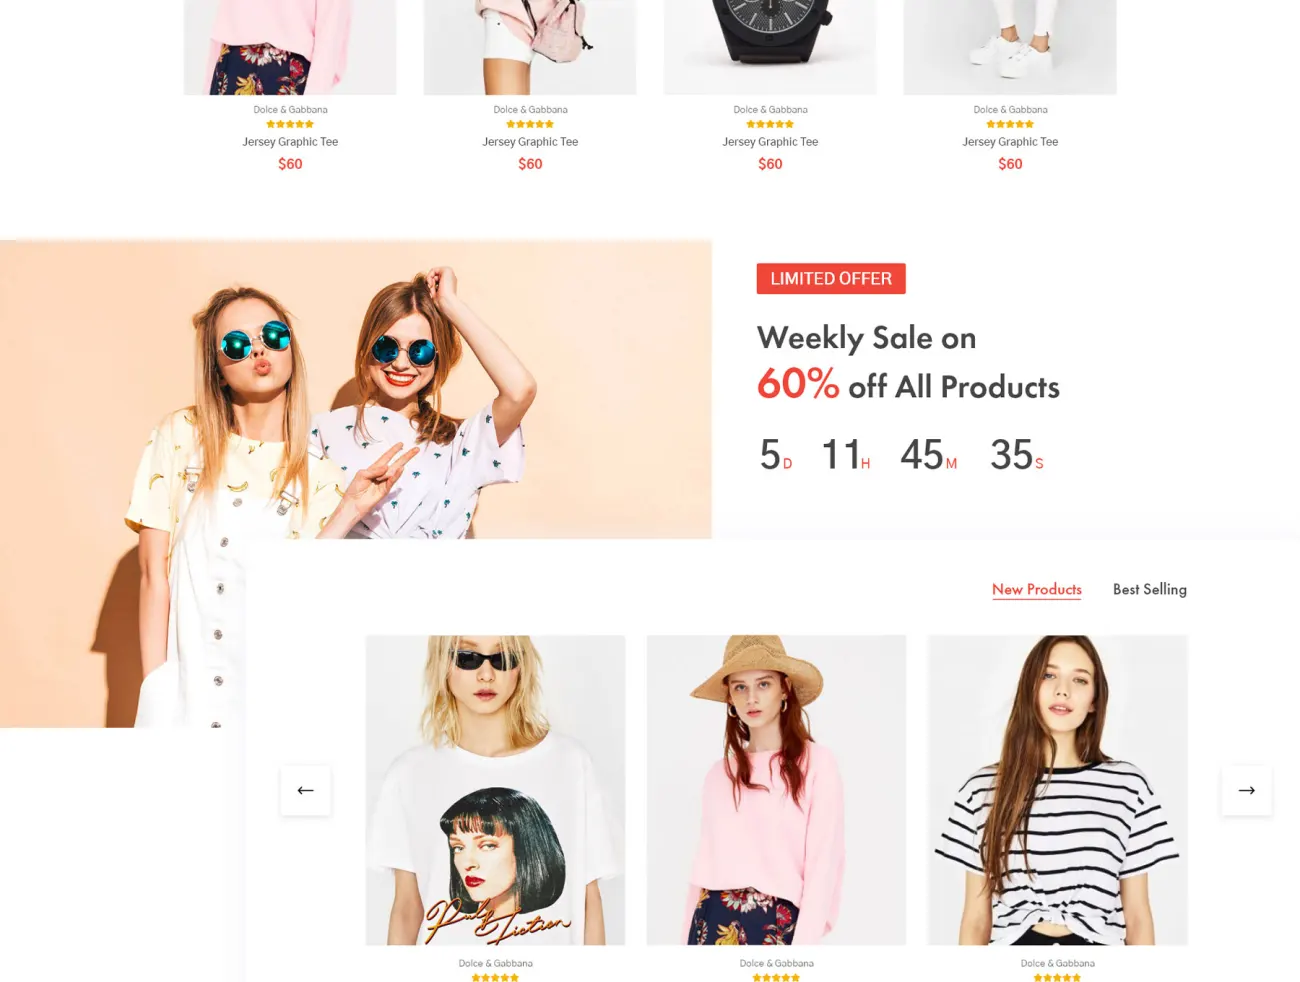 时尚电子商务模板 StyleNet – Fashion e-Commerce Template .xd .figma插图11